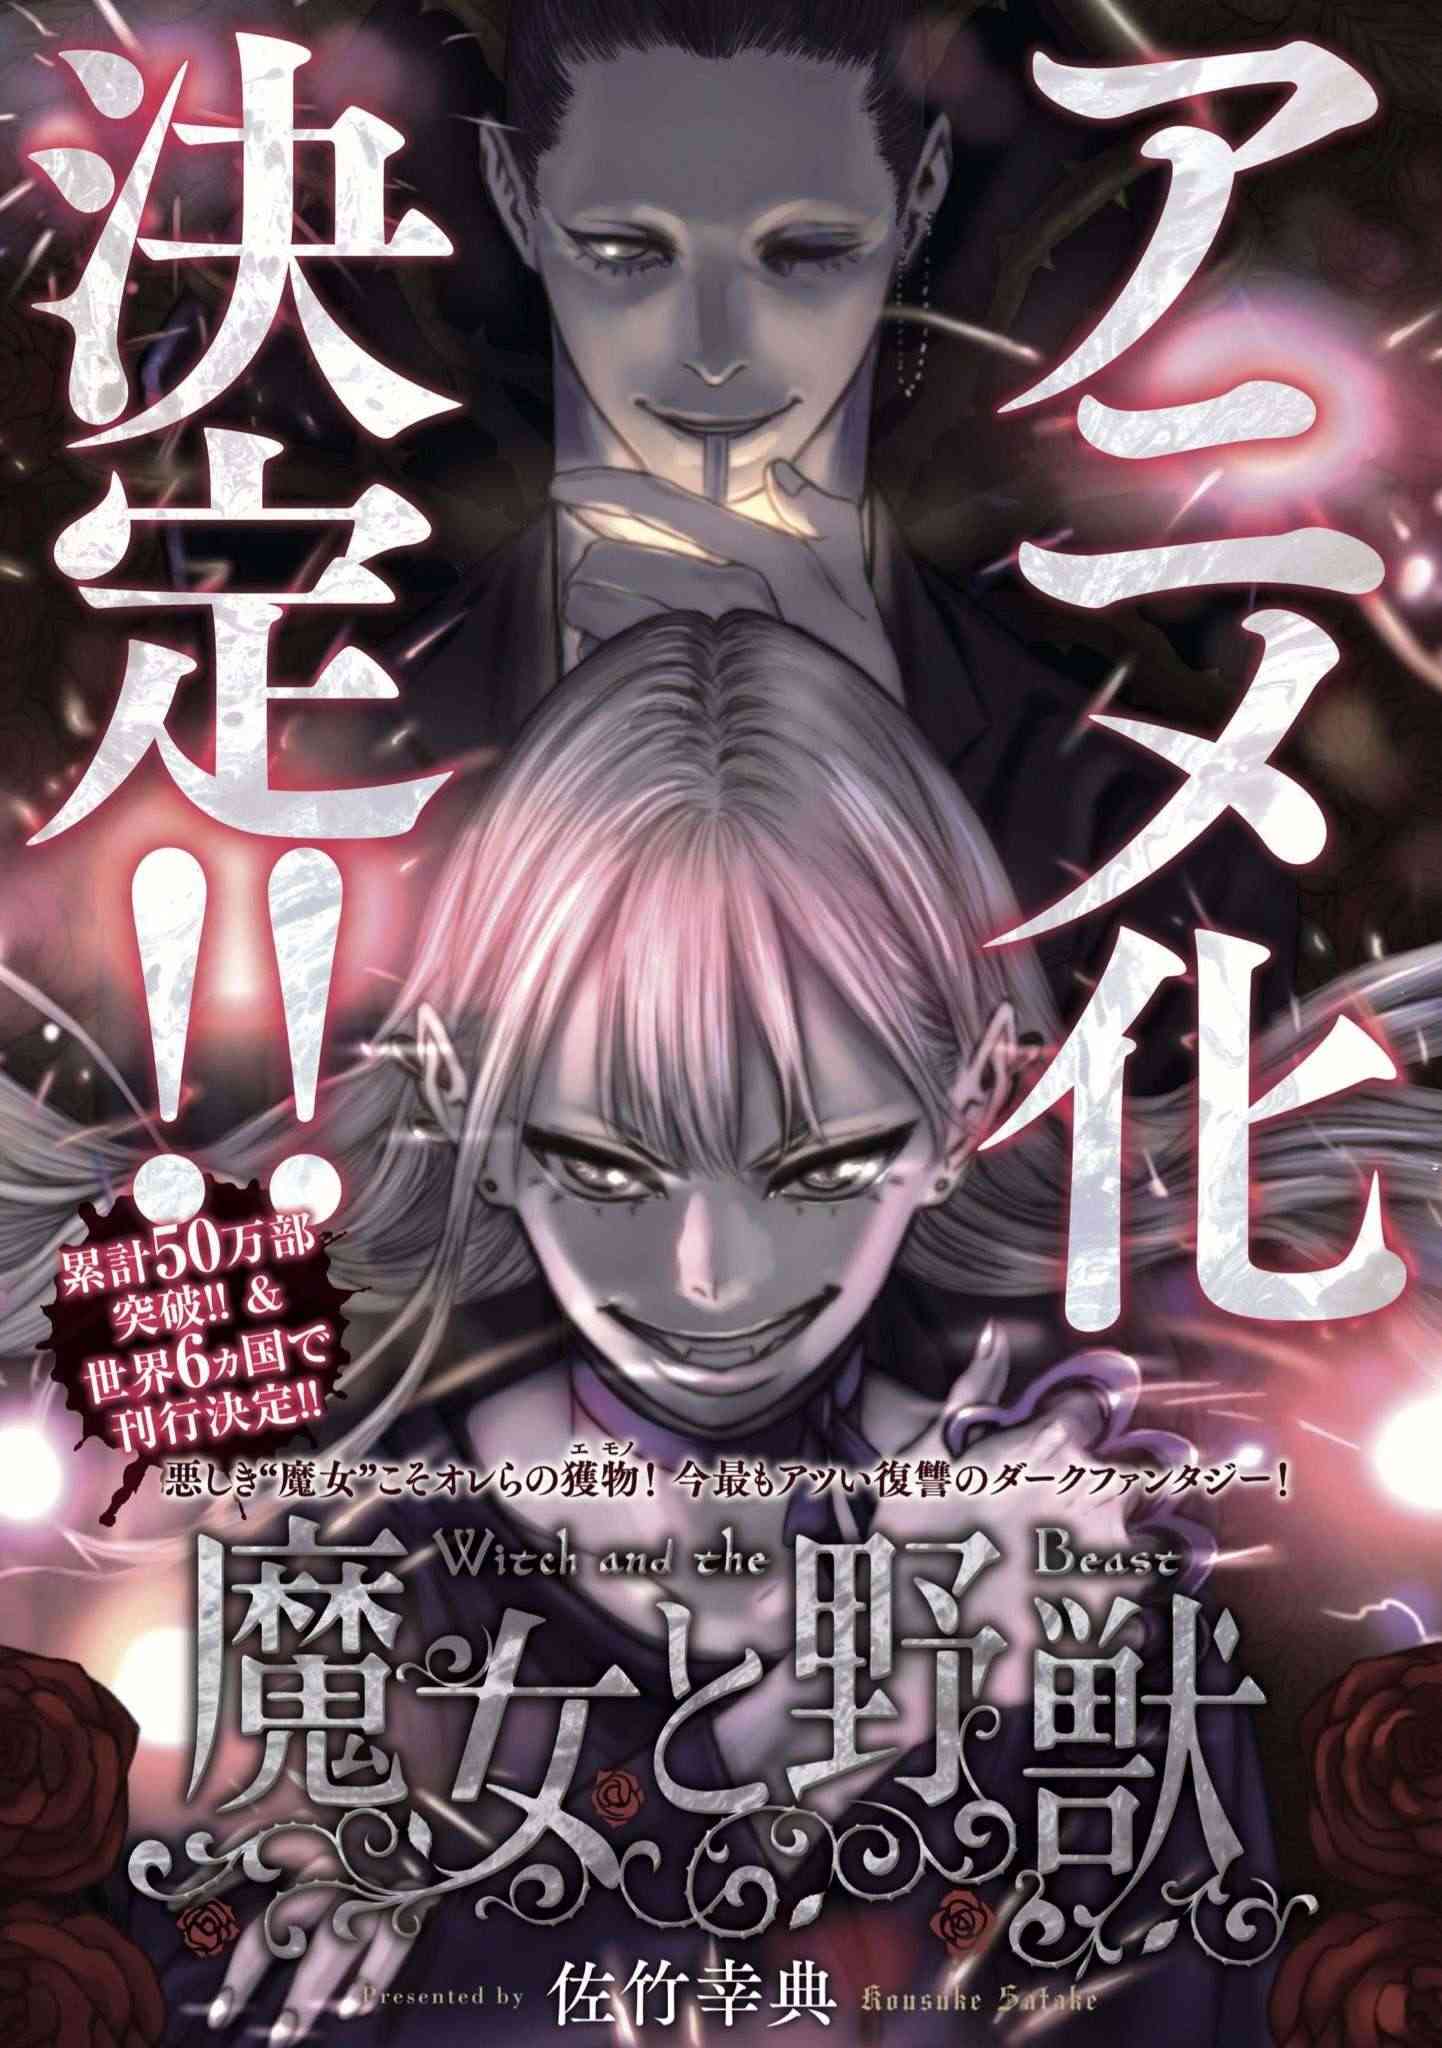 Manga The Witch and the Beast sẽ được chuyển thể thành anime